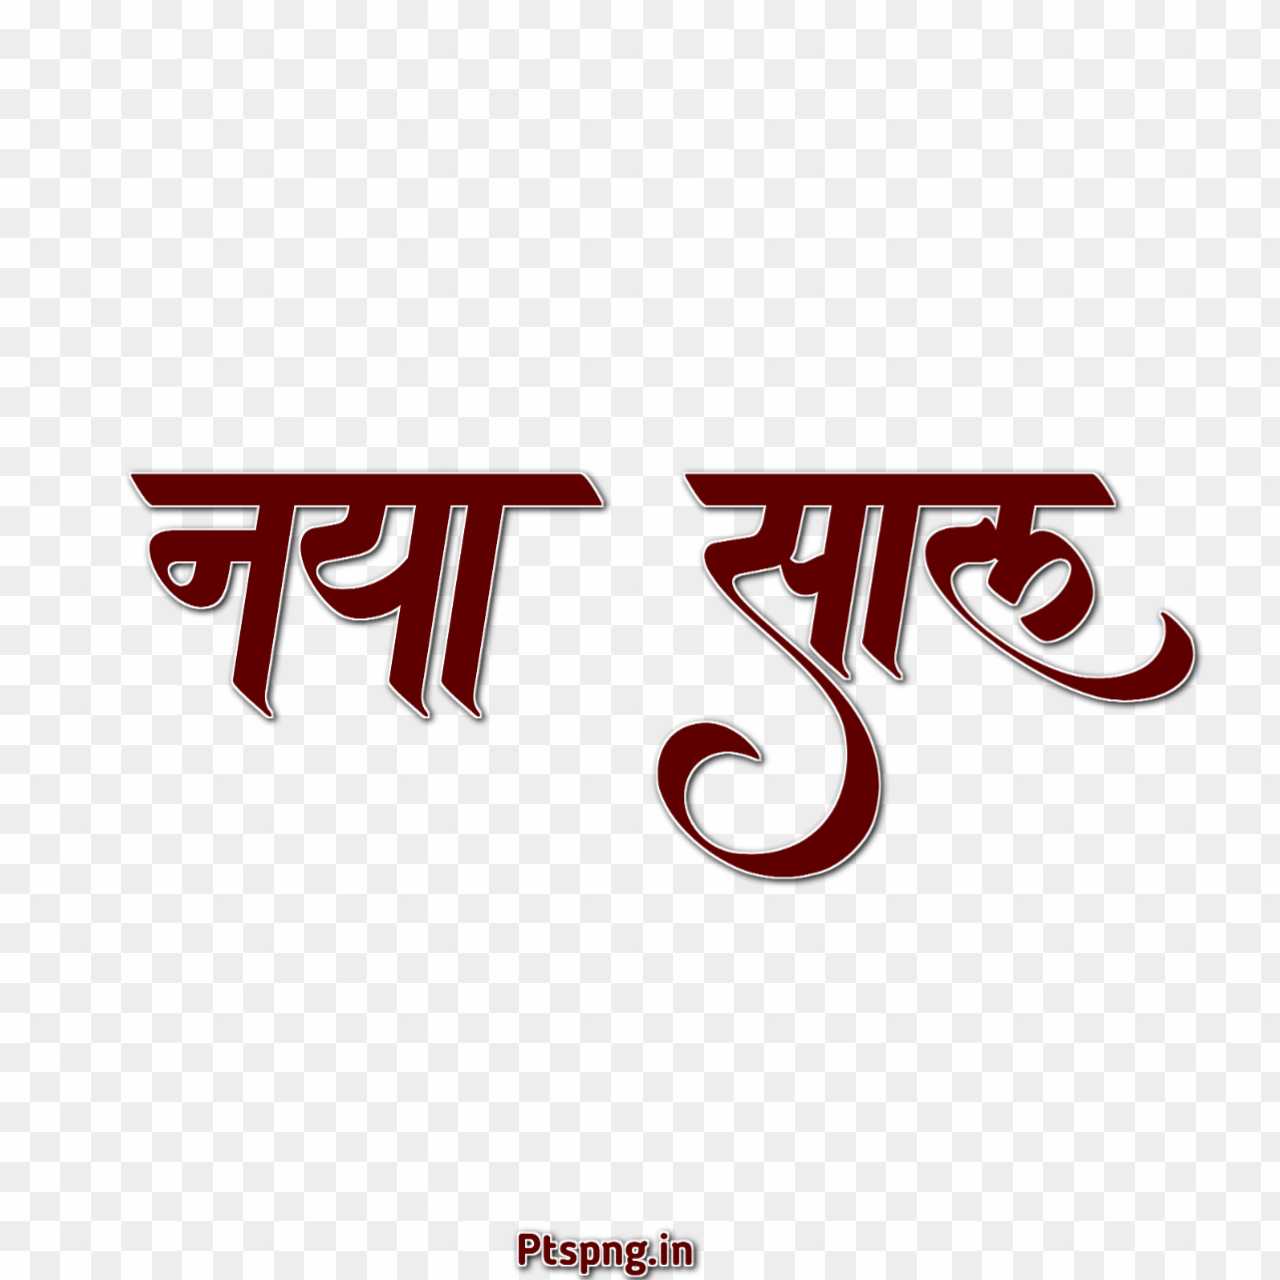 Naya sal Hindi font text png images 